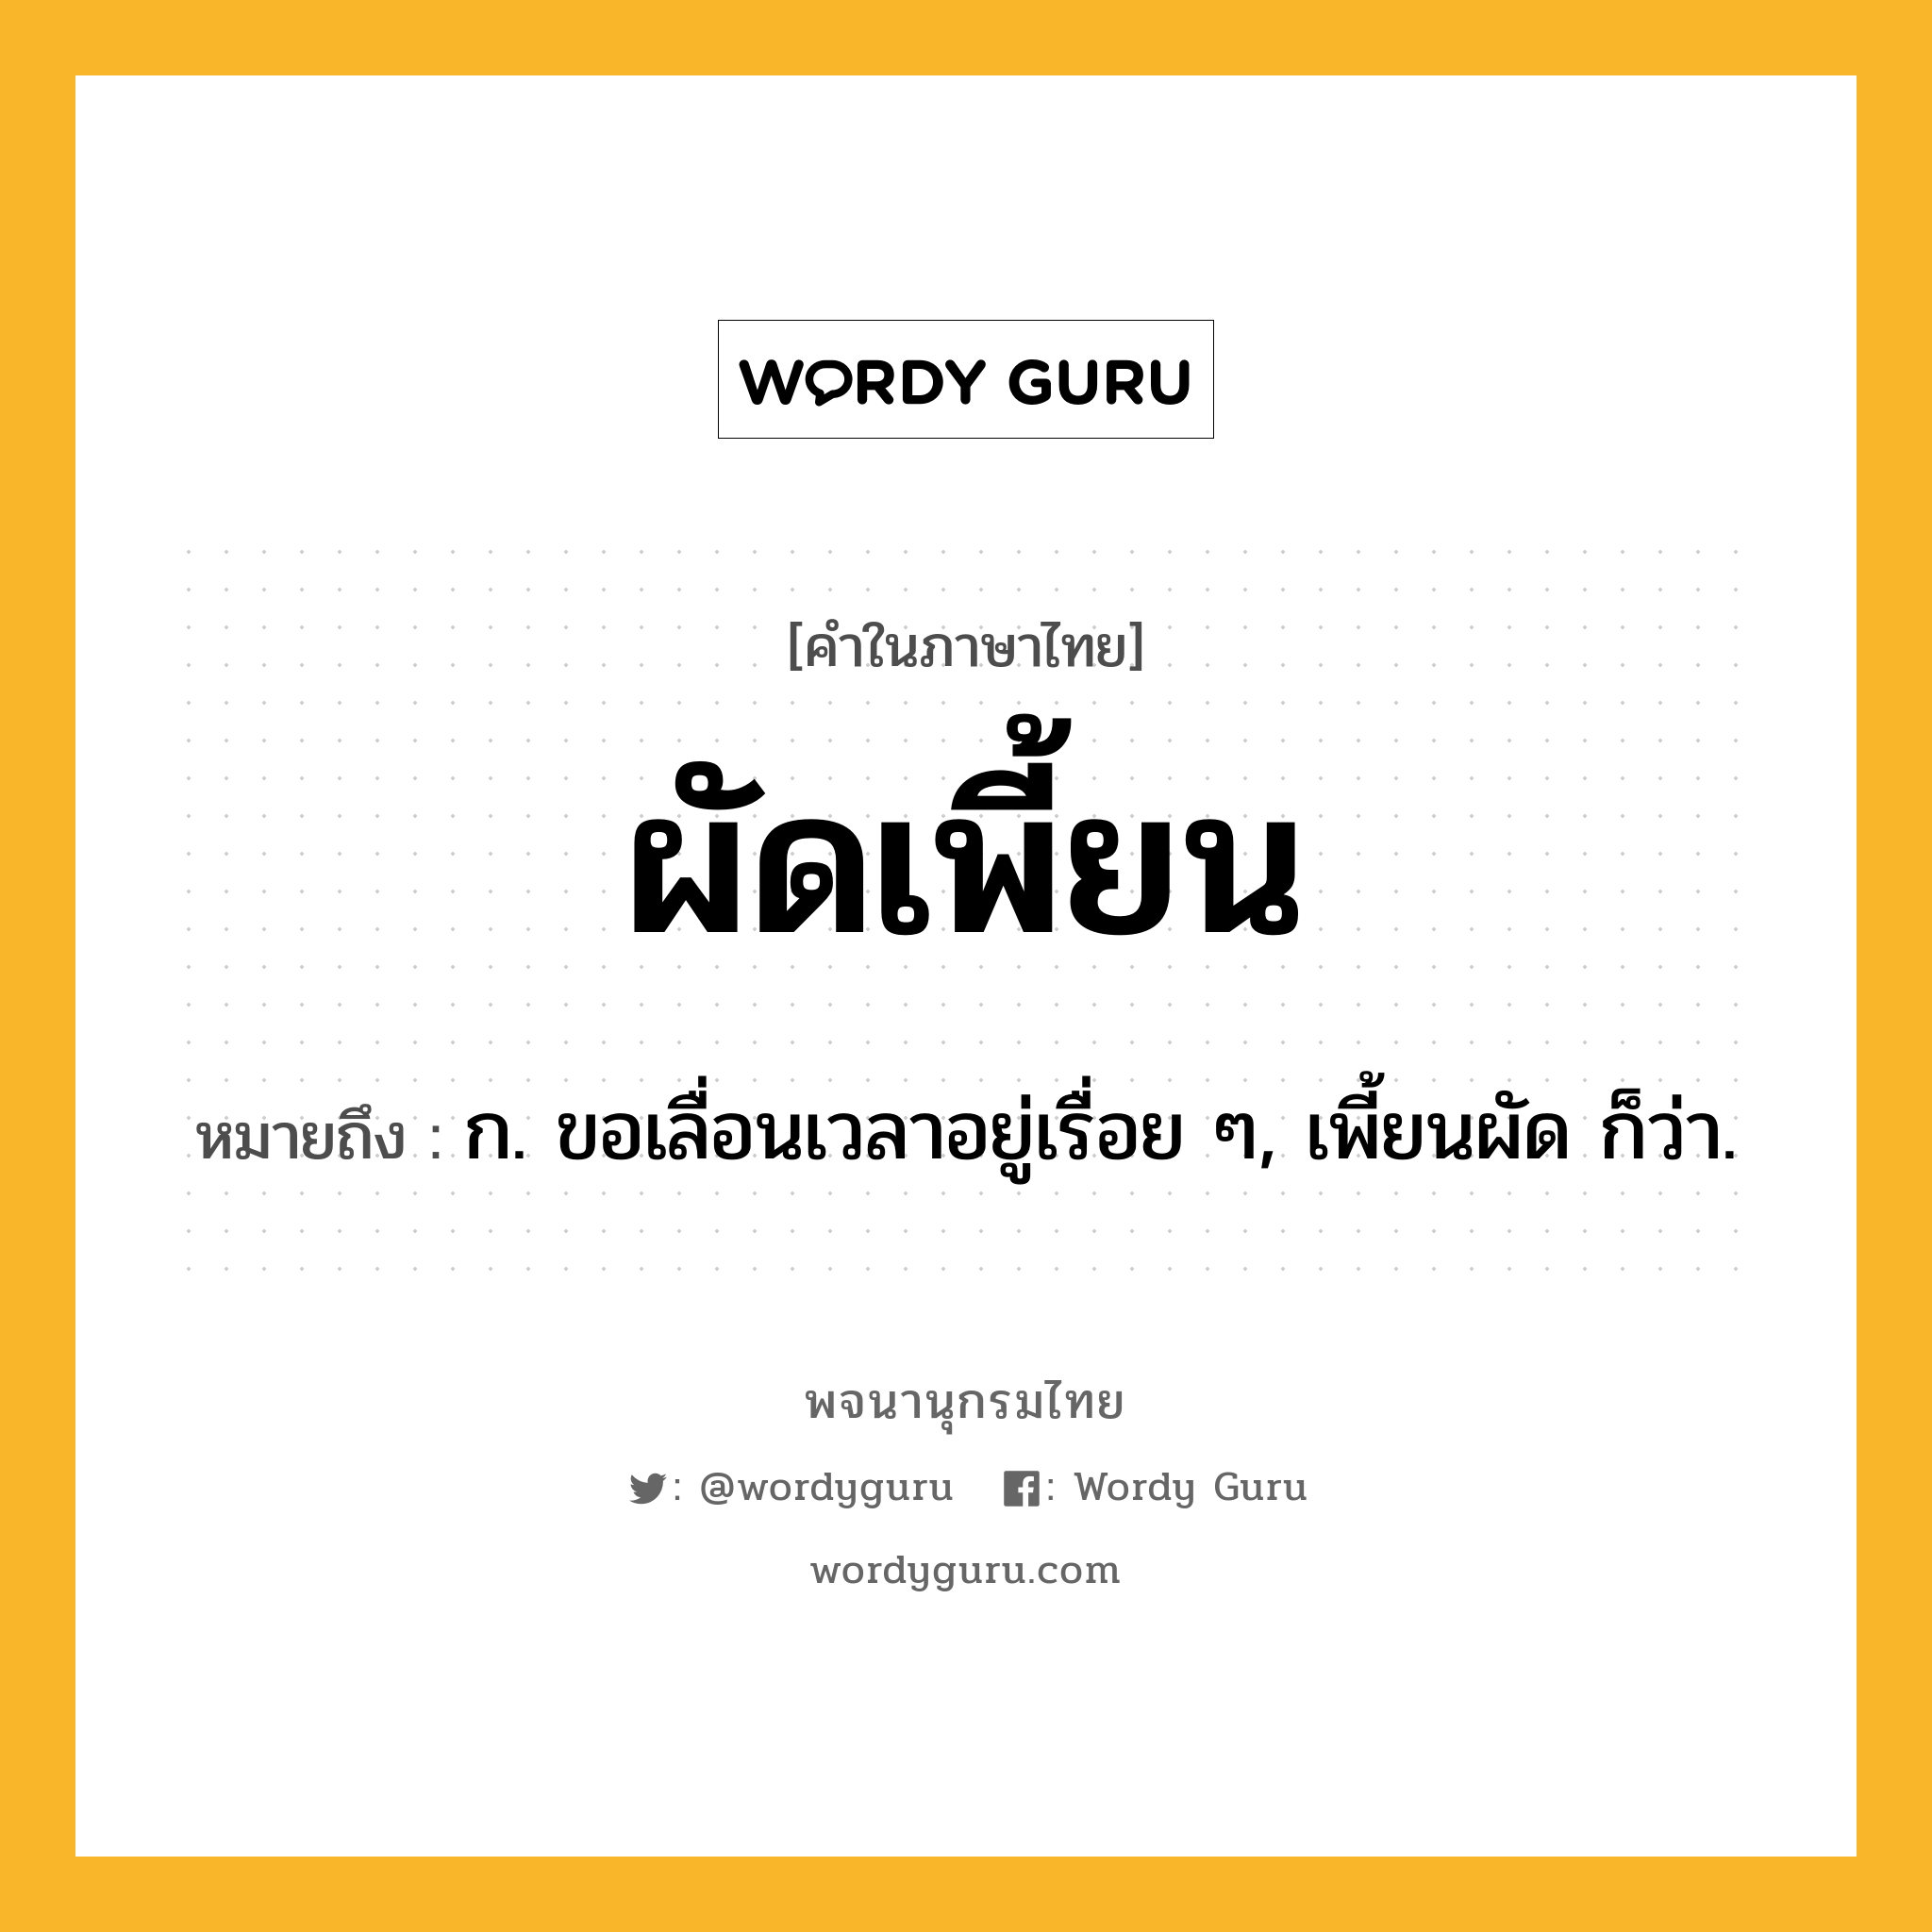 ผัดเพี้ยน หมายถึงอะไร?, คำในภาษาไทย ผัดเพี้ยน หมายถึง ก. ขอเลื่อนเวลาอยู่เรื่อย ๆ, เพี้ยนผัด ก็ว่า.